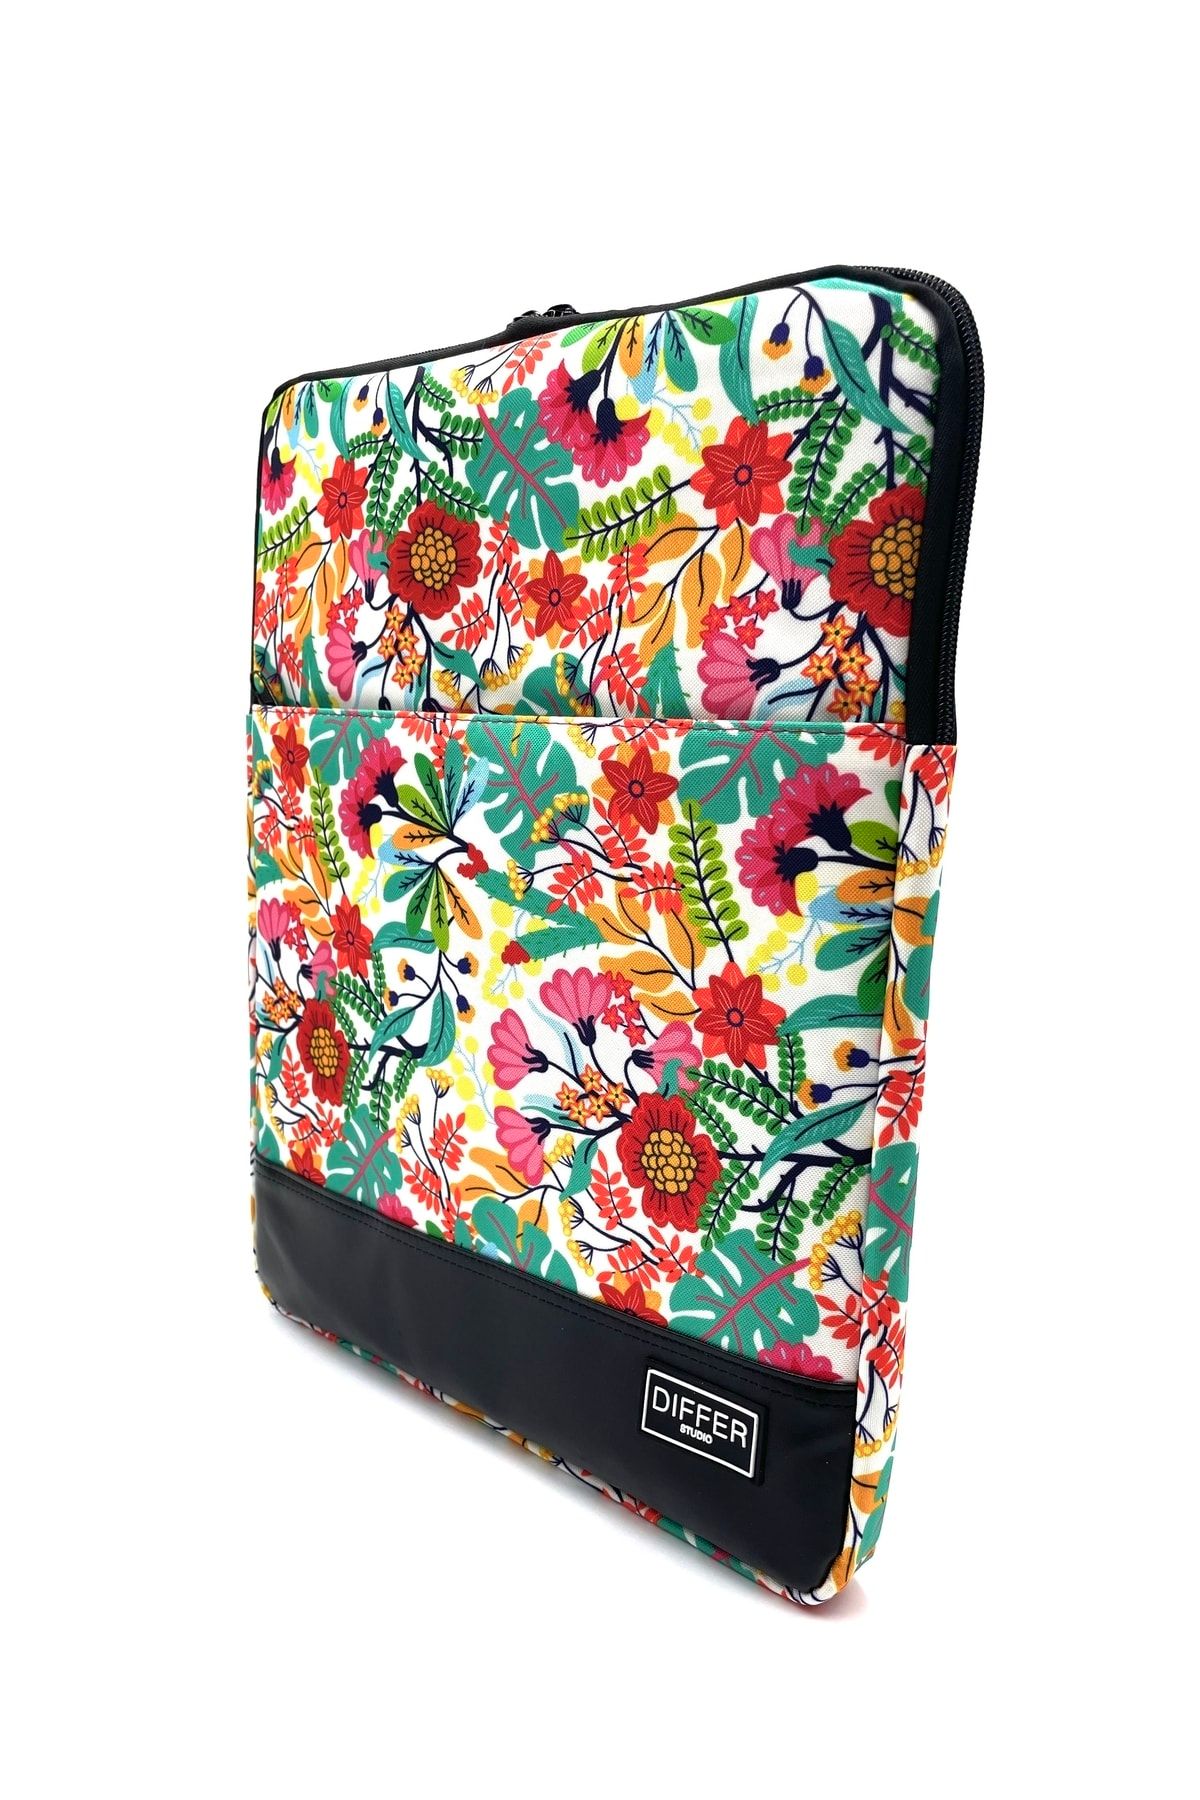 Differ Studio 14'' Inç Çiçek Desenli Laptop/macbook/notebook/evrak Kılıfı/çantası